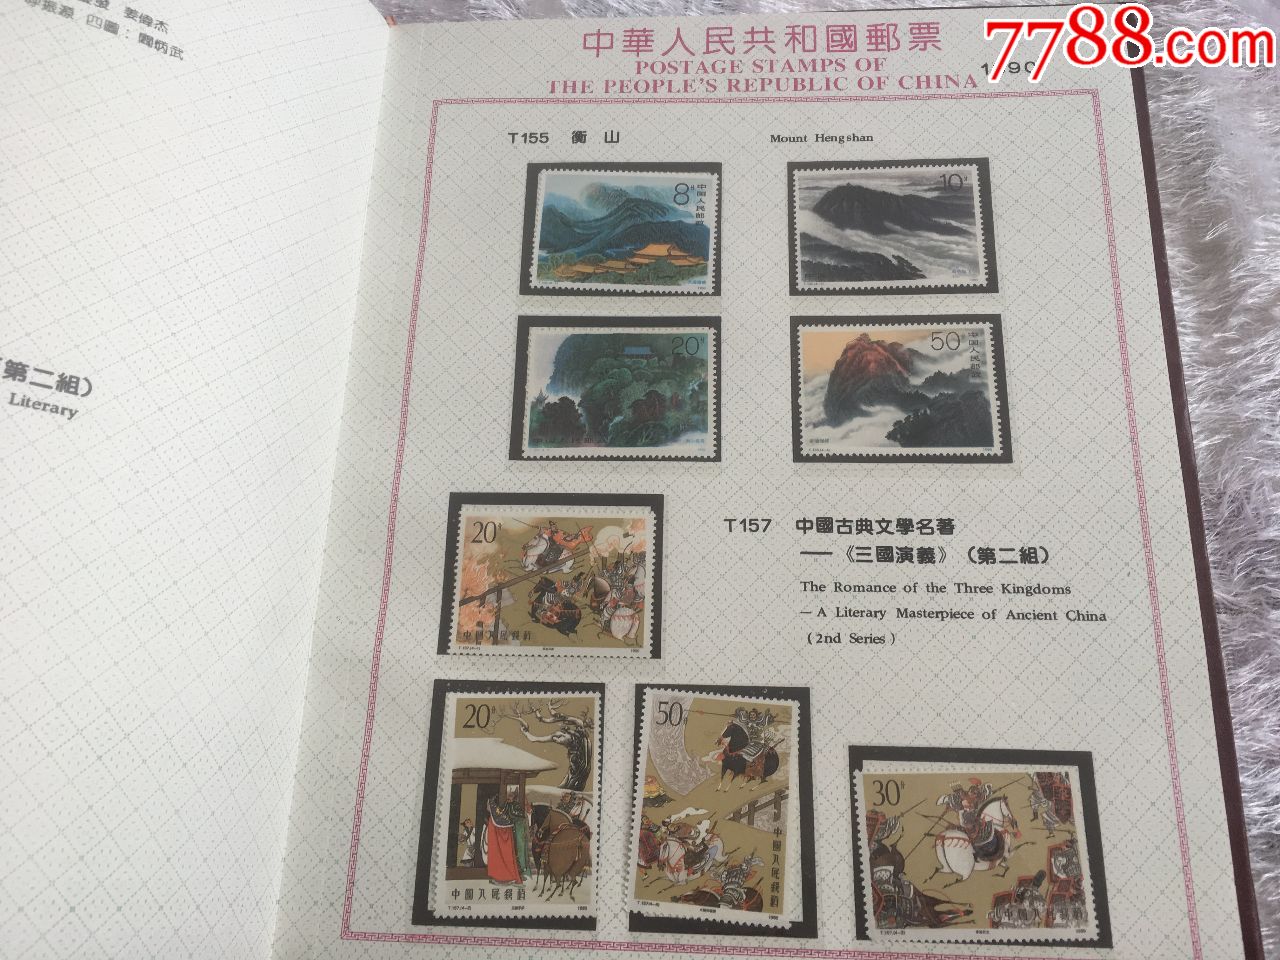 023中国邮政《甲辰年》特种邮票图稿征集'